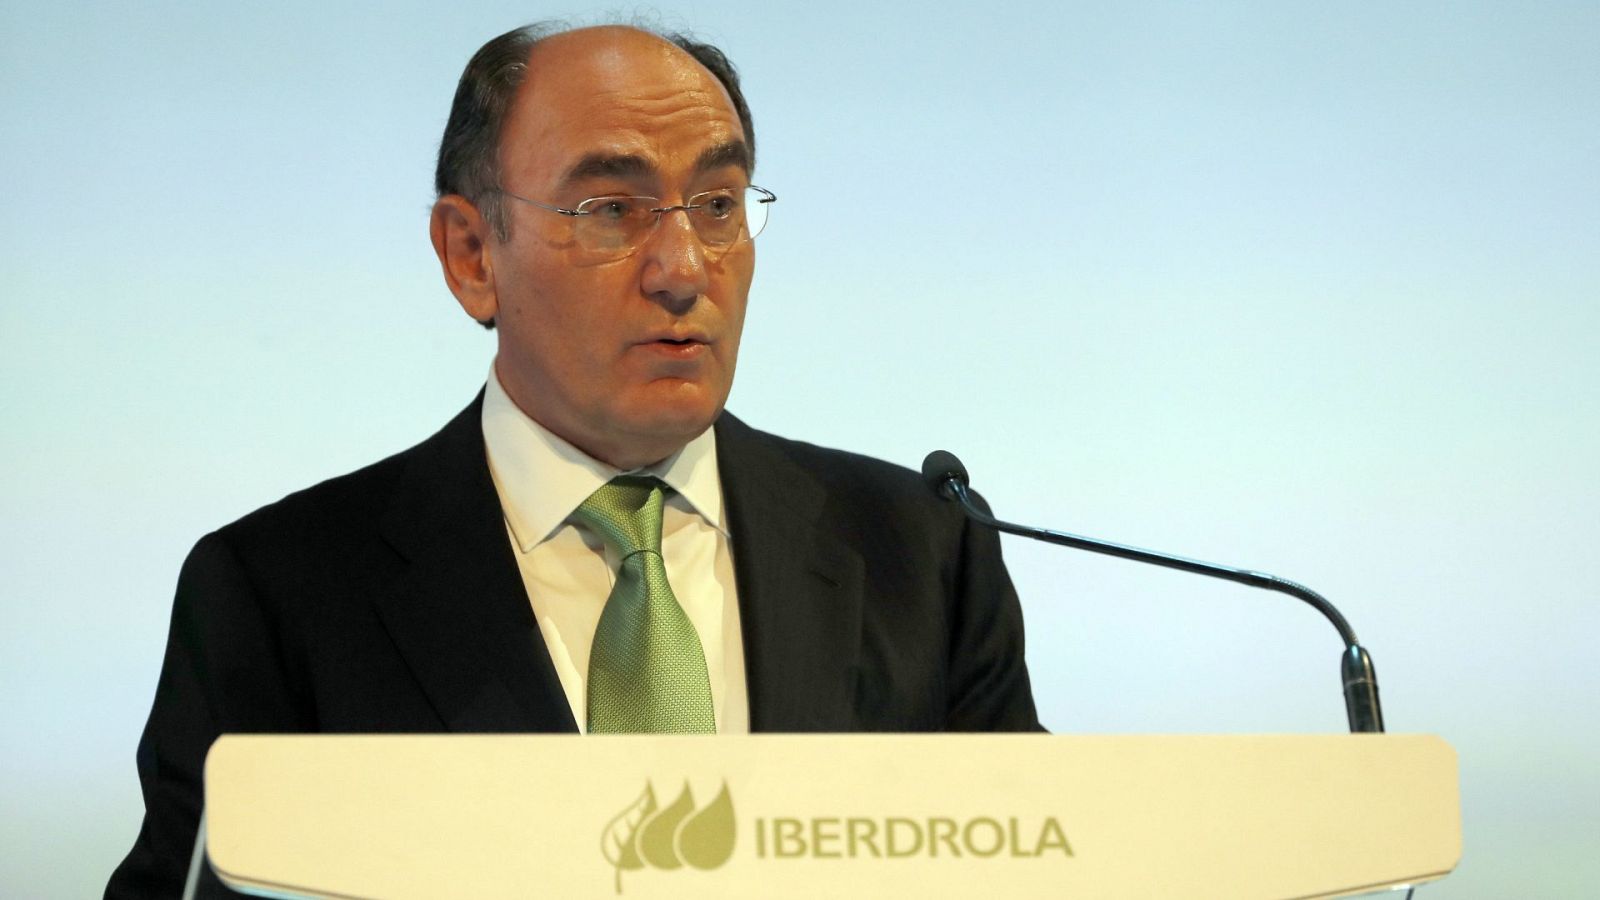 El presidente de Iberdrola, Ignacio Sánchez Galán en una imagen de archivo